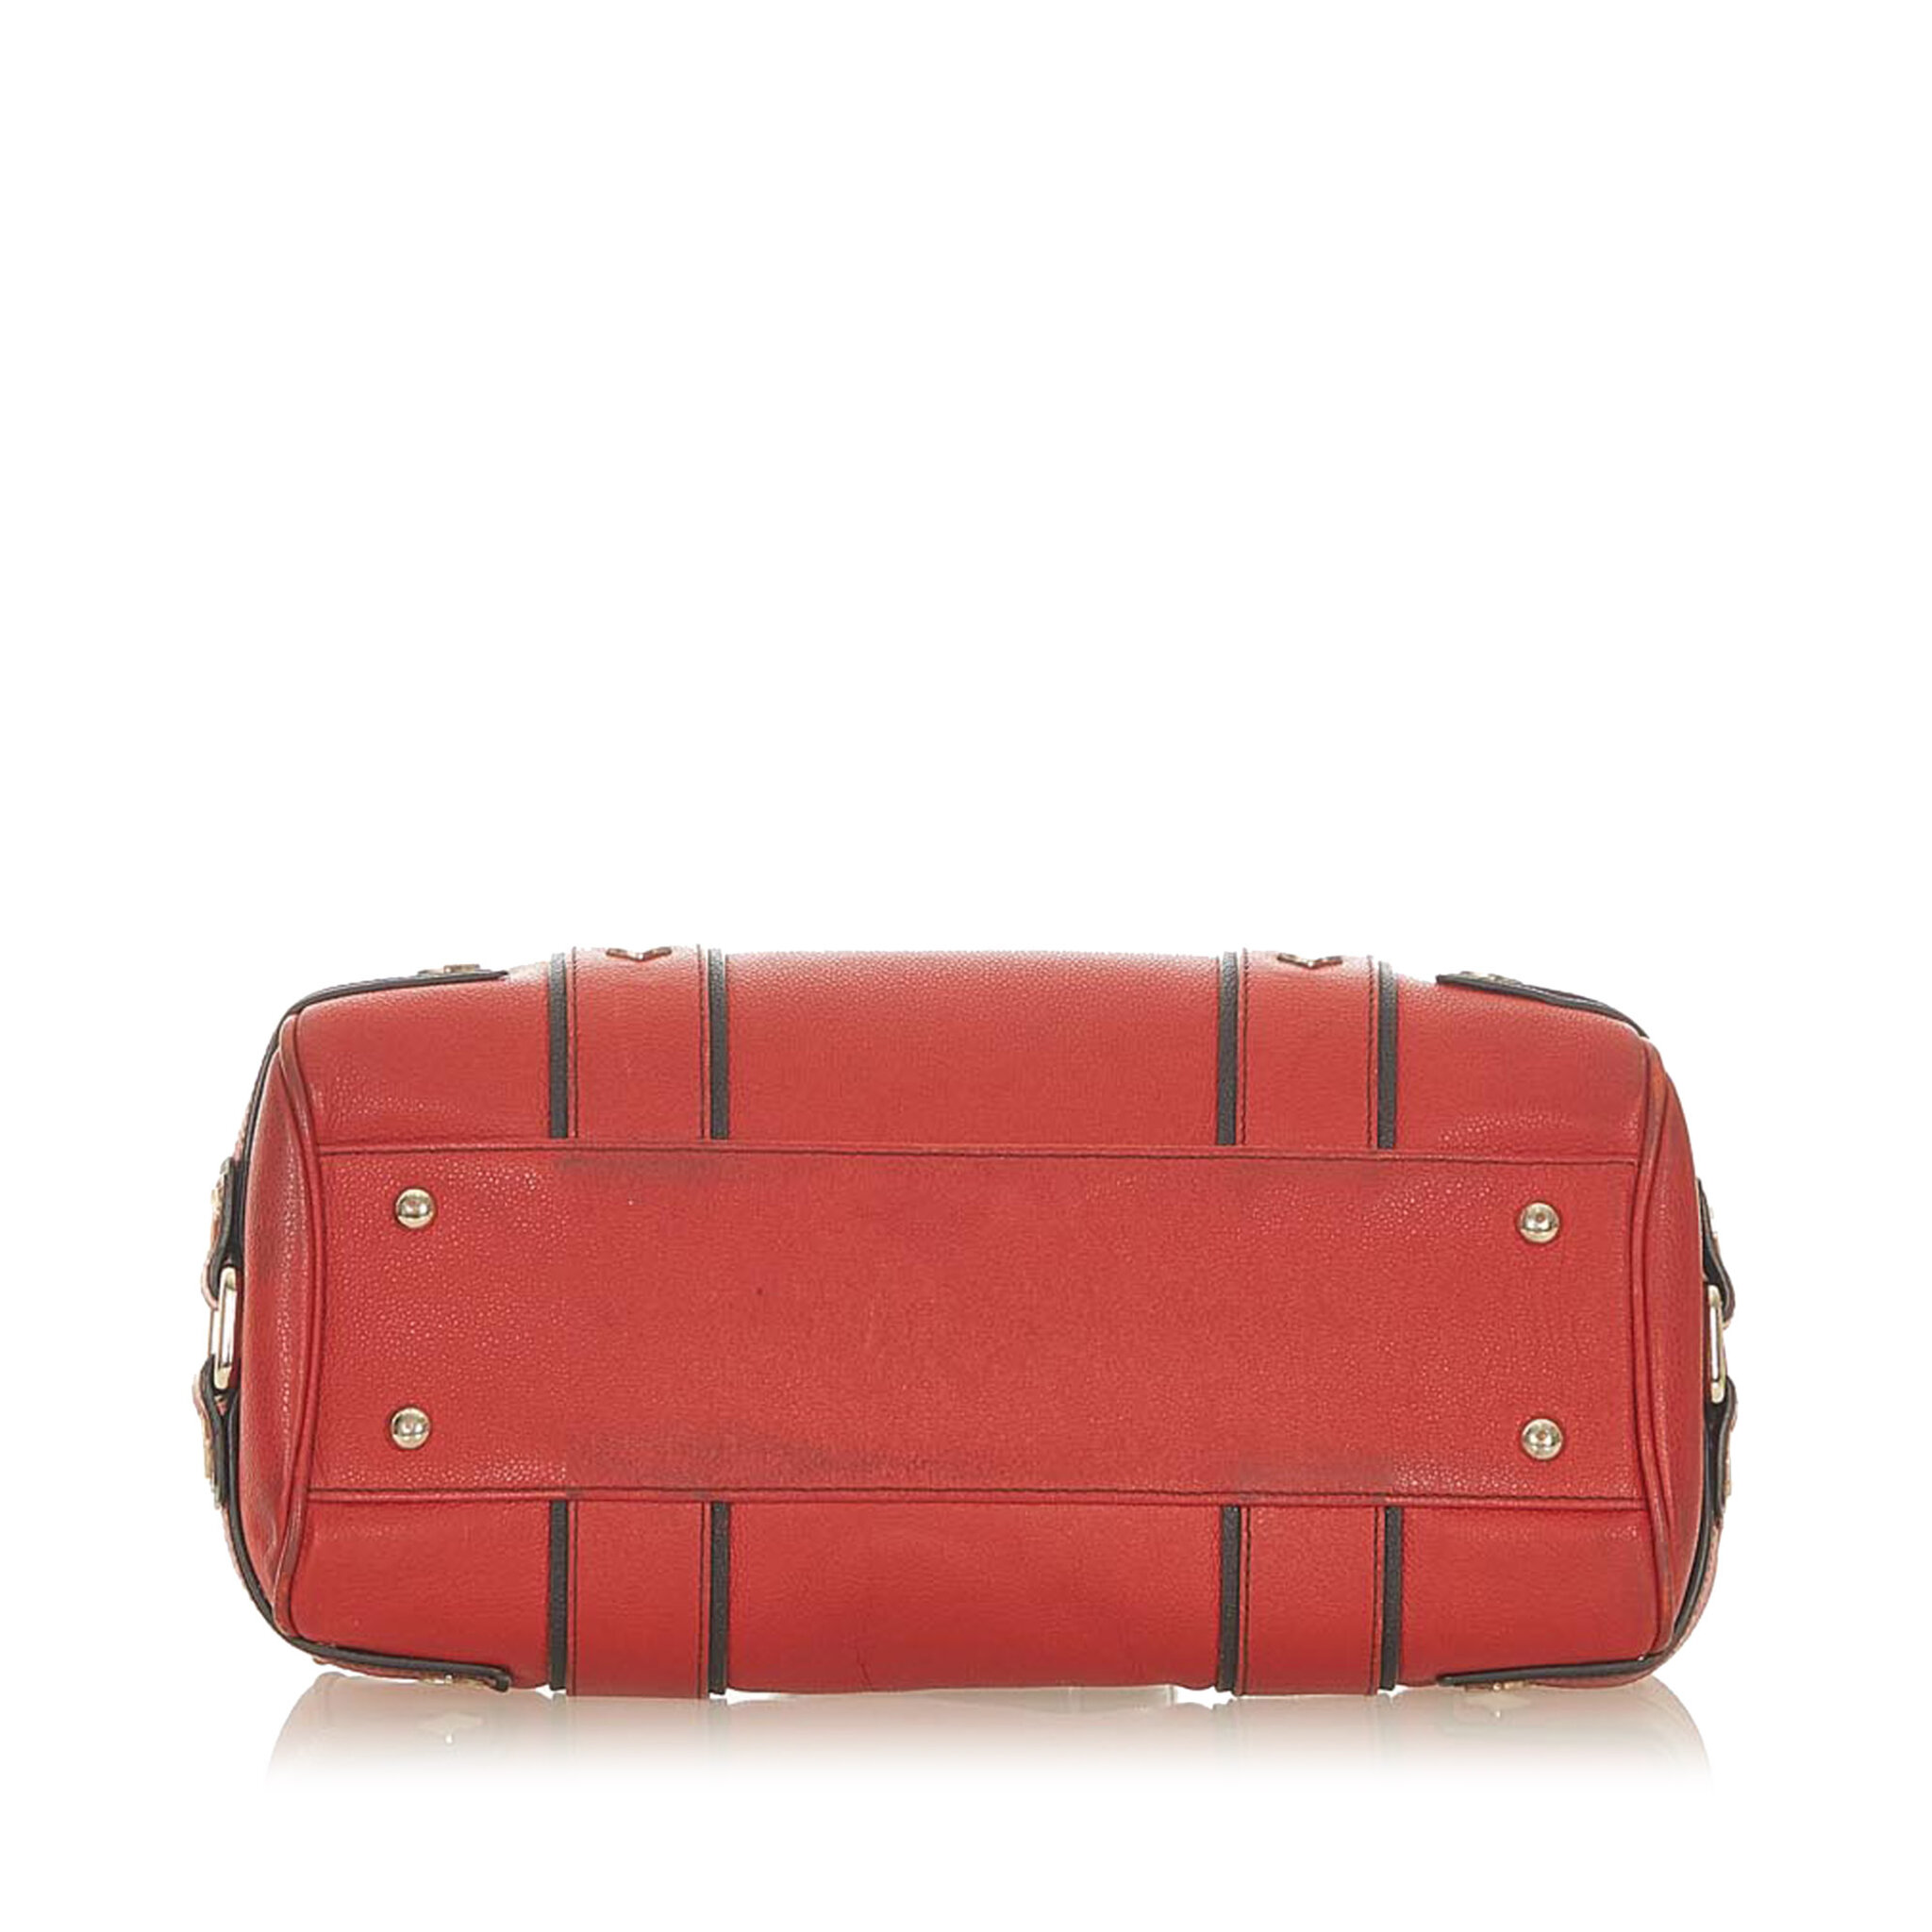 Mcm Frame Leather Handbag, red